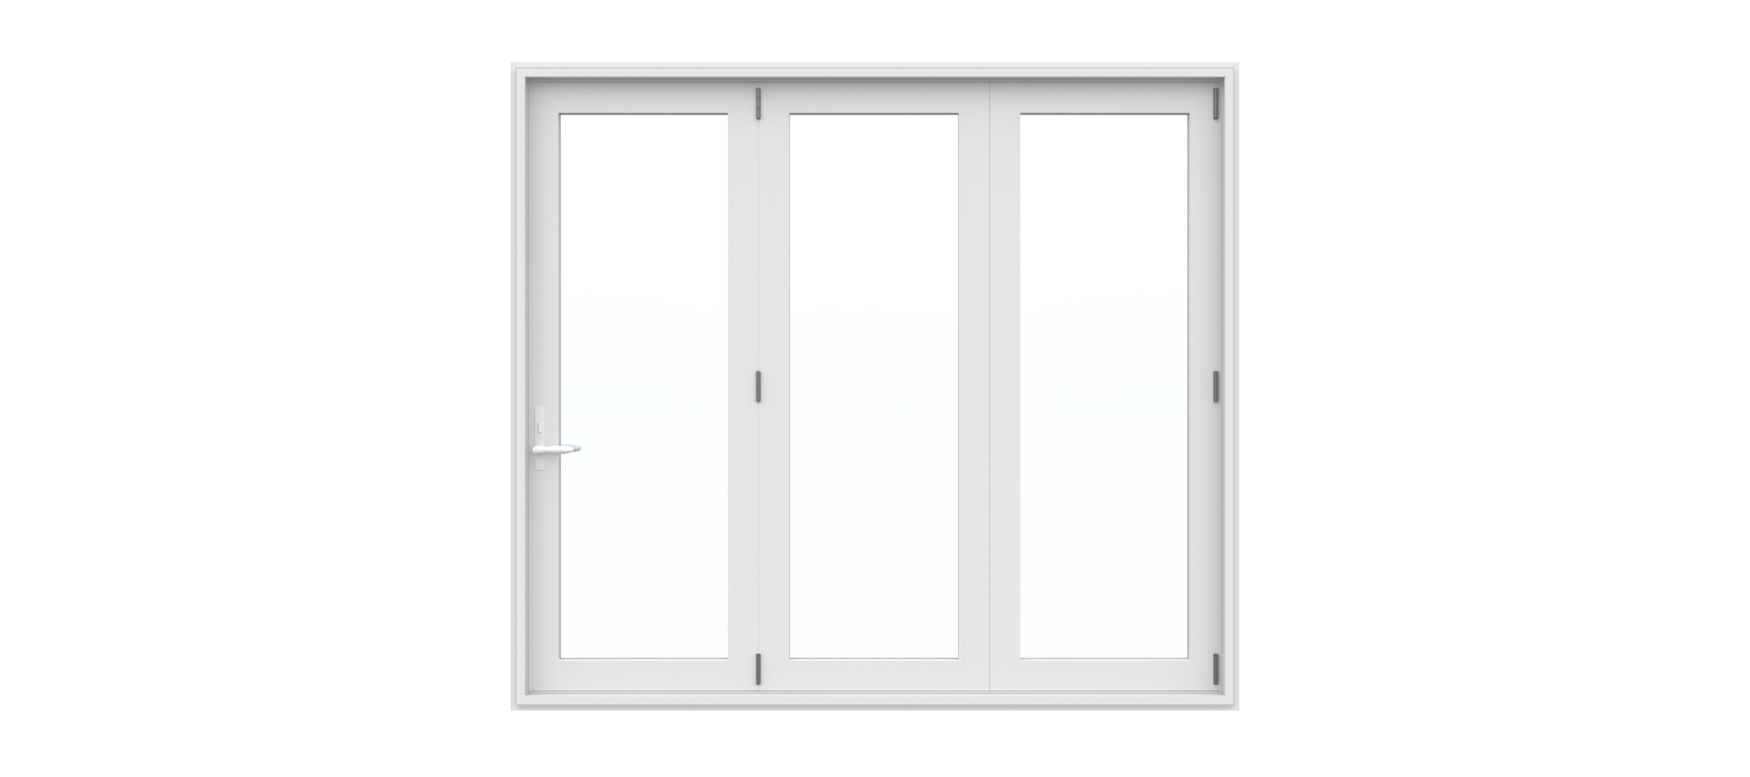 3 Panel Folding Door